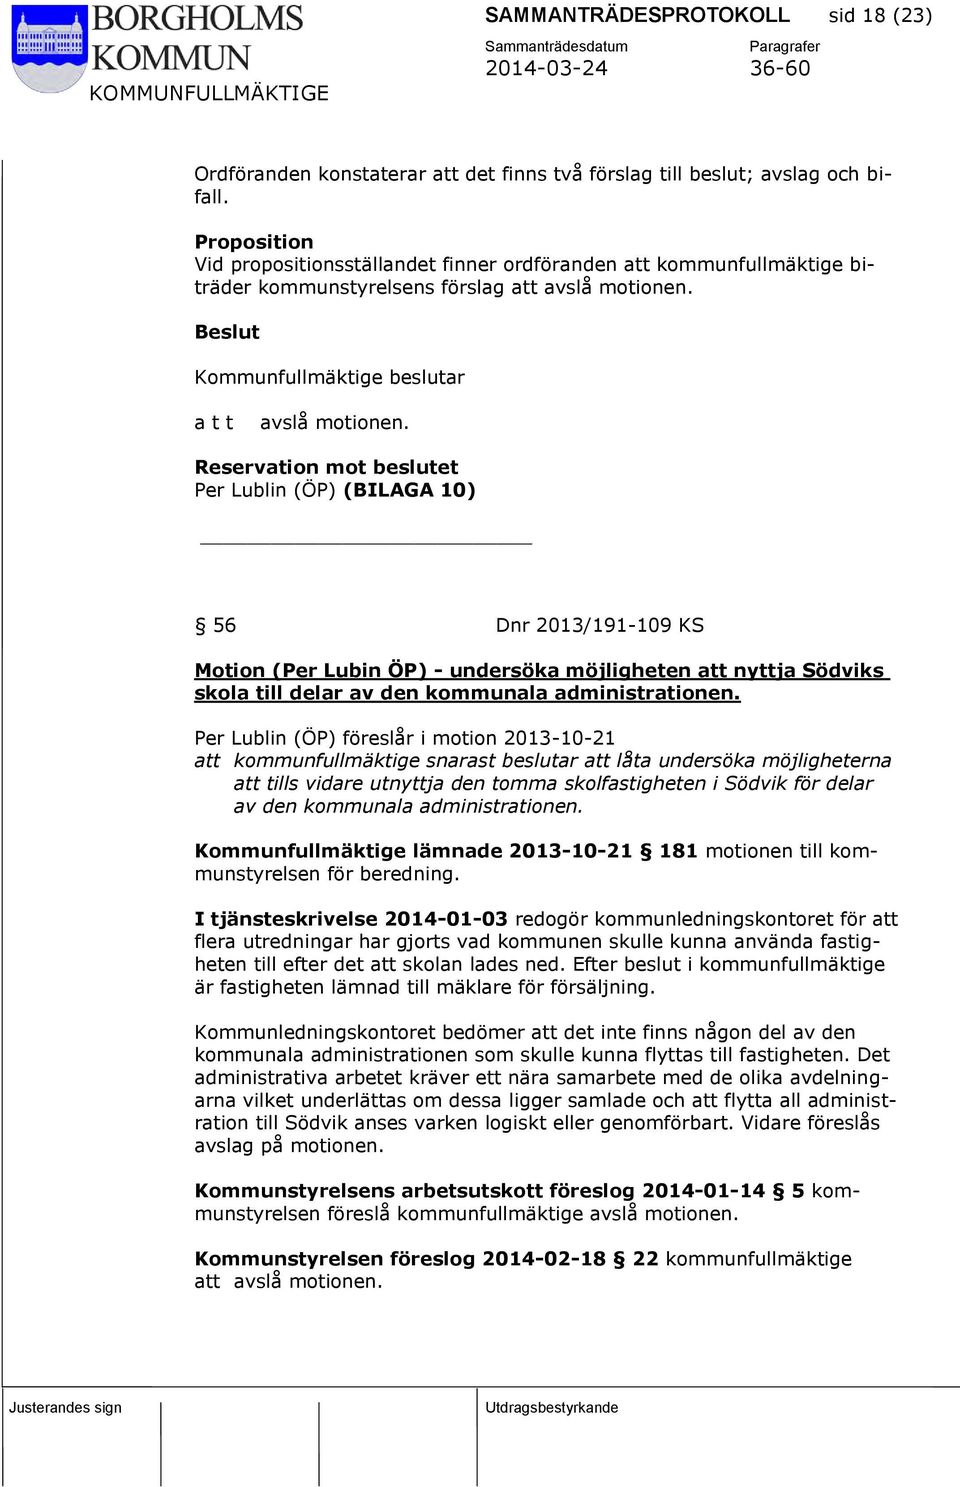 Reservation mot beslutet Per Lublin (ÖP) (BILAGA 10) 56 Dnr 2013/191-109 KS Motion (Per Lubin ÖP) - undersöka möjligheten att nyttja Södviks skola till delar av den kommunala administrationen.